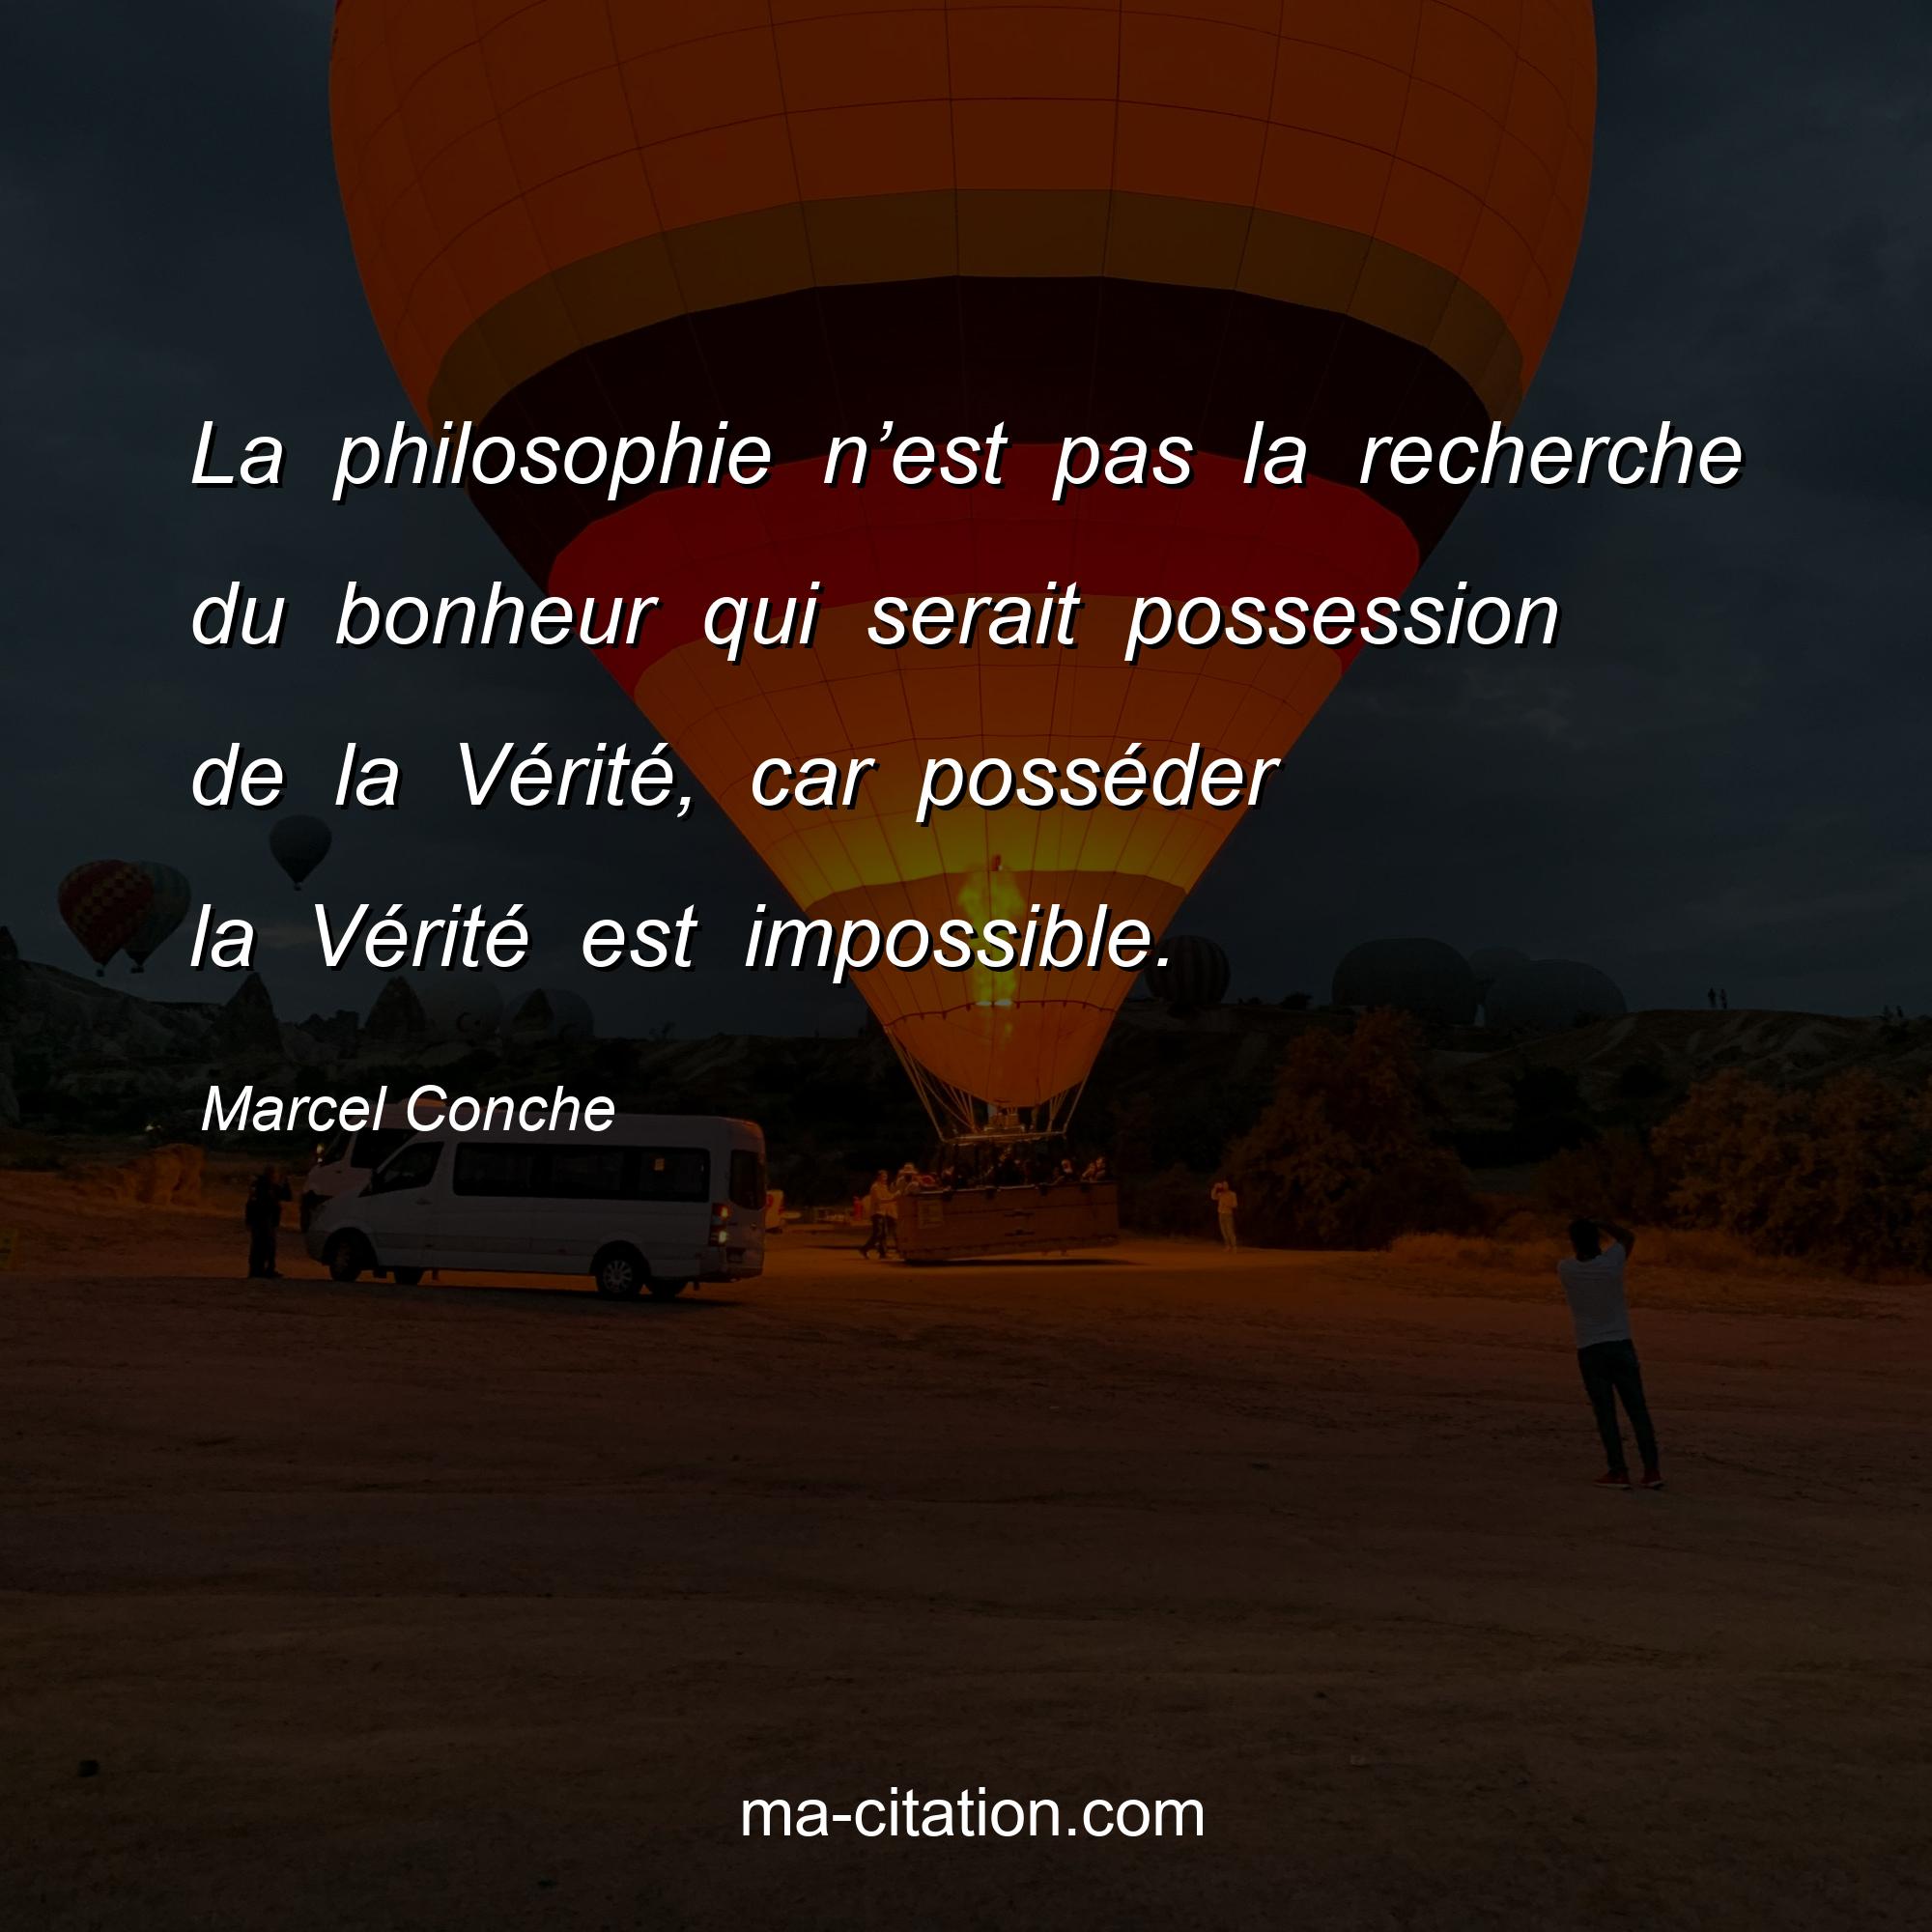 Marcel Conche : La philosophie n’est pas la recherche du bonheur qui serait possession de la Vérité, car posséder la Vérité est impossible.